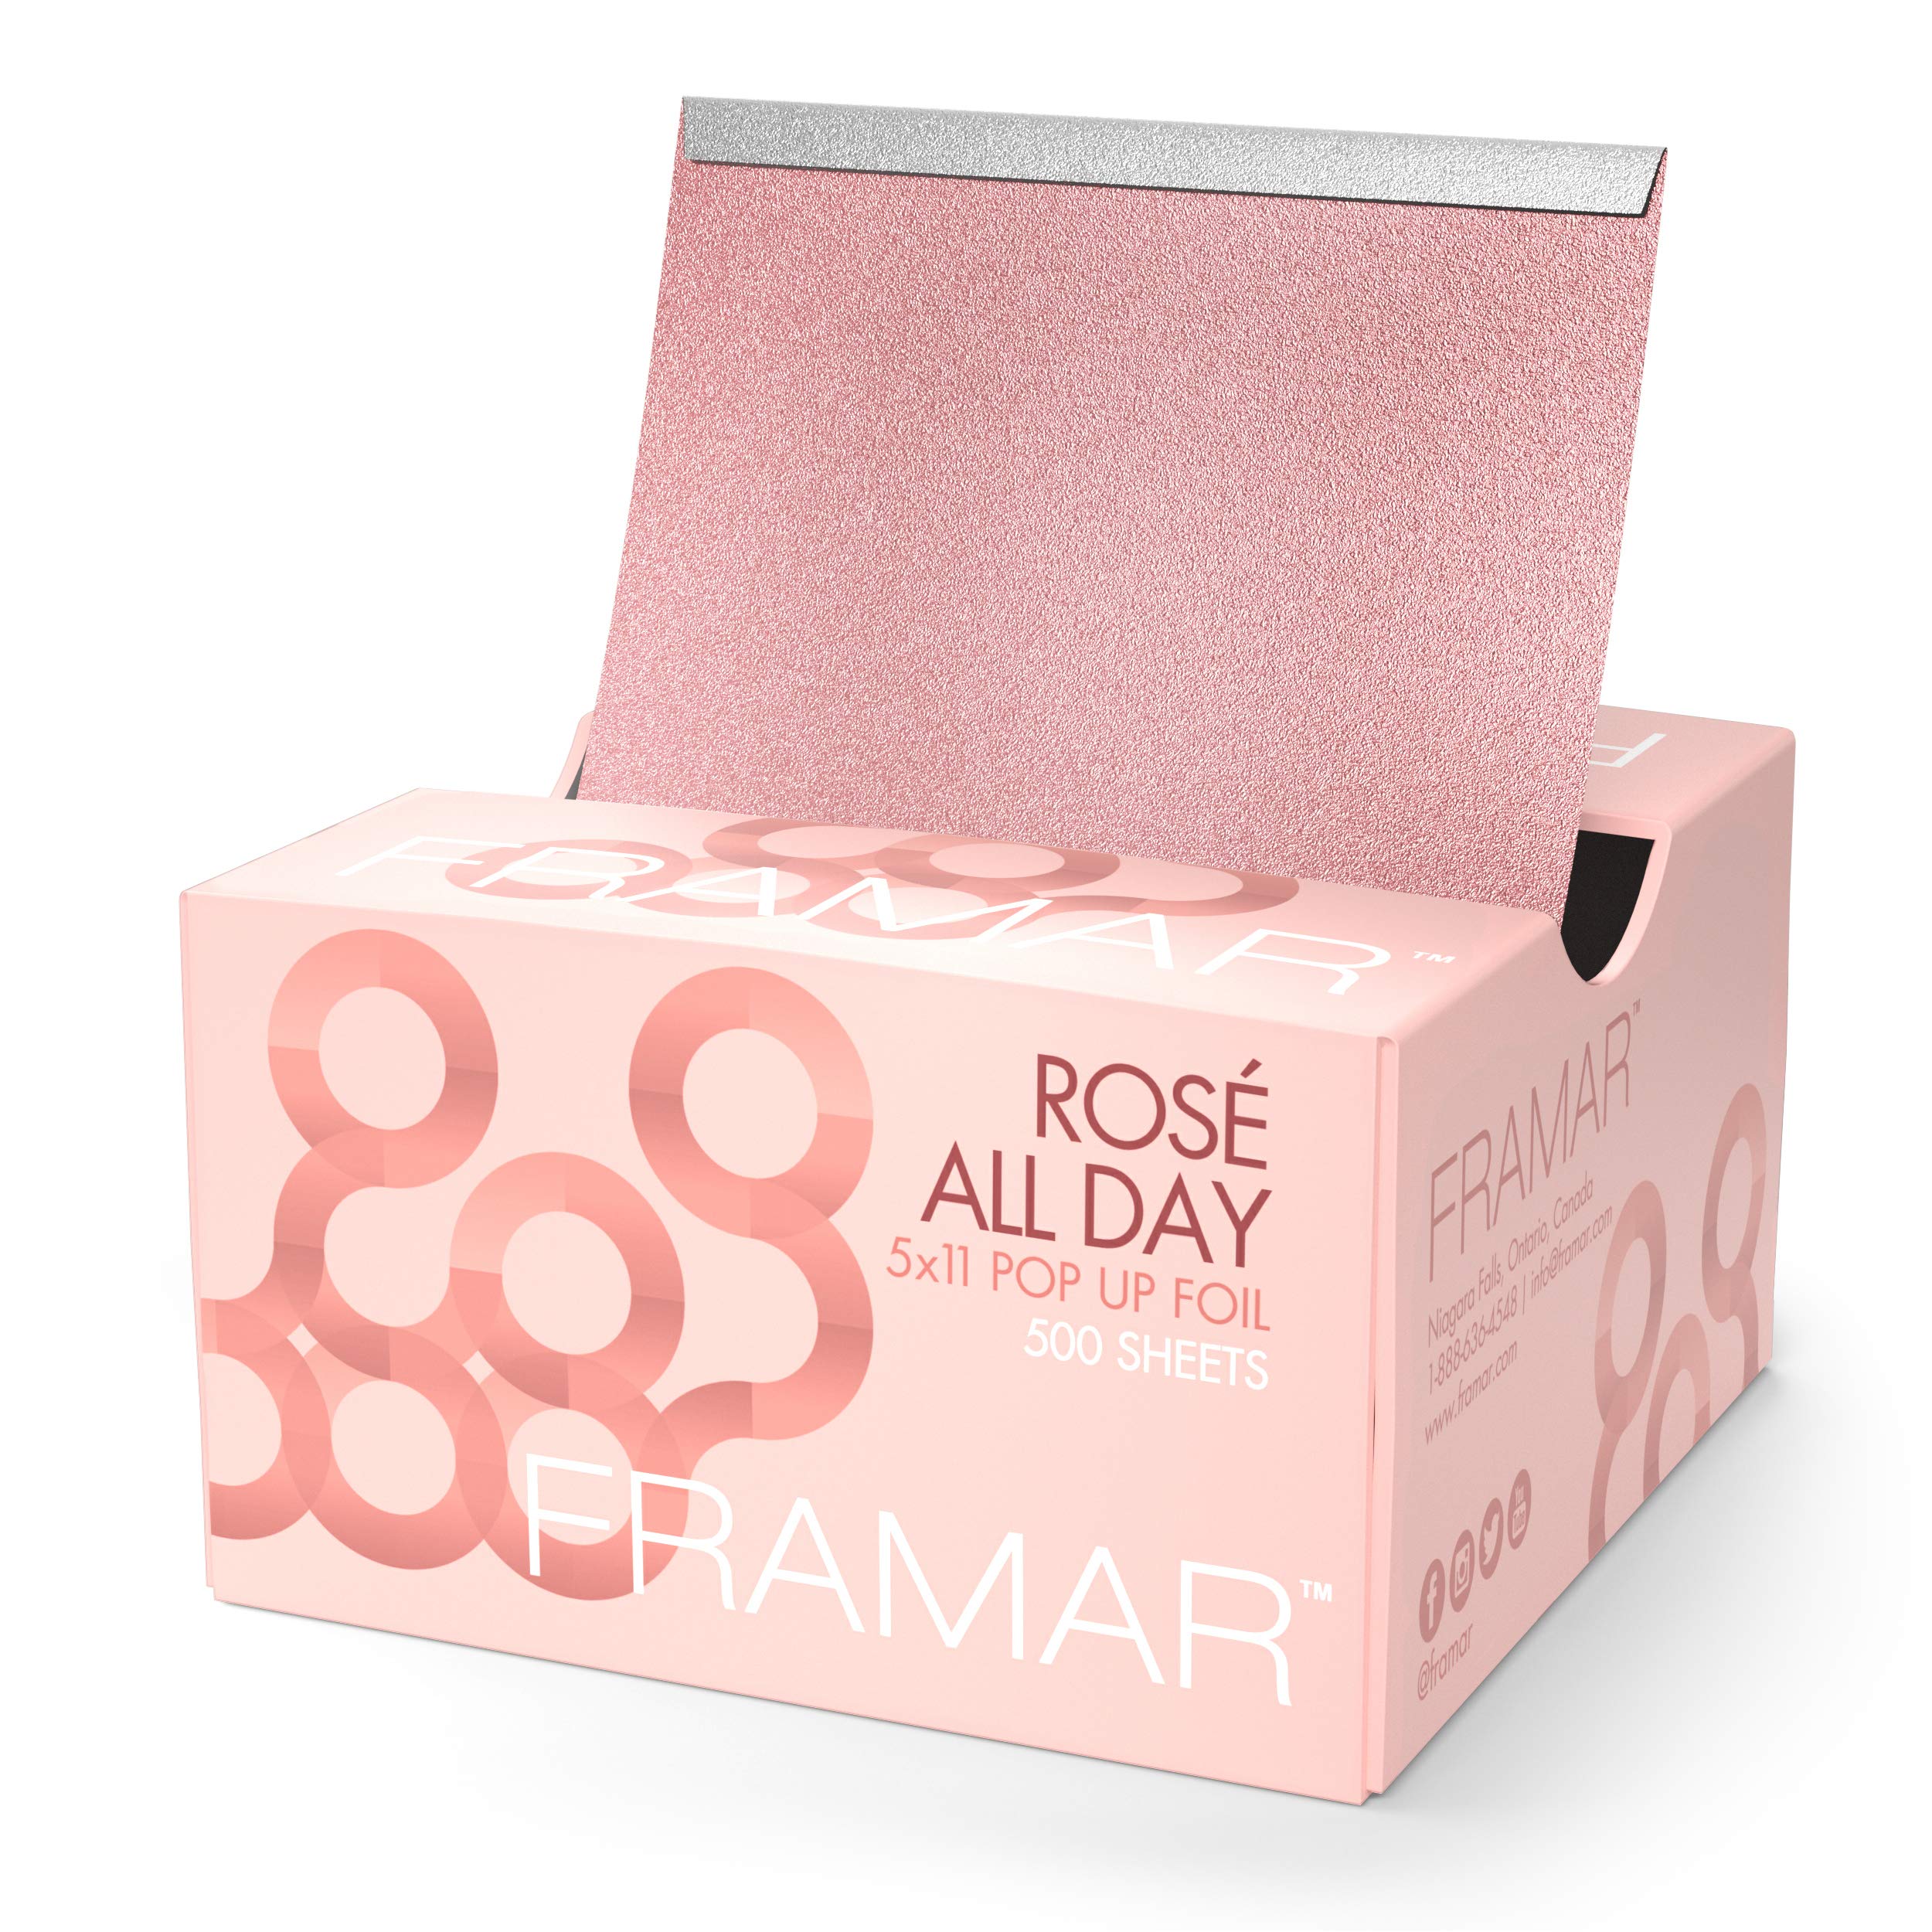 Framar Rose All Day 5x11 Pop Up Foil